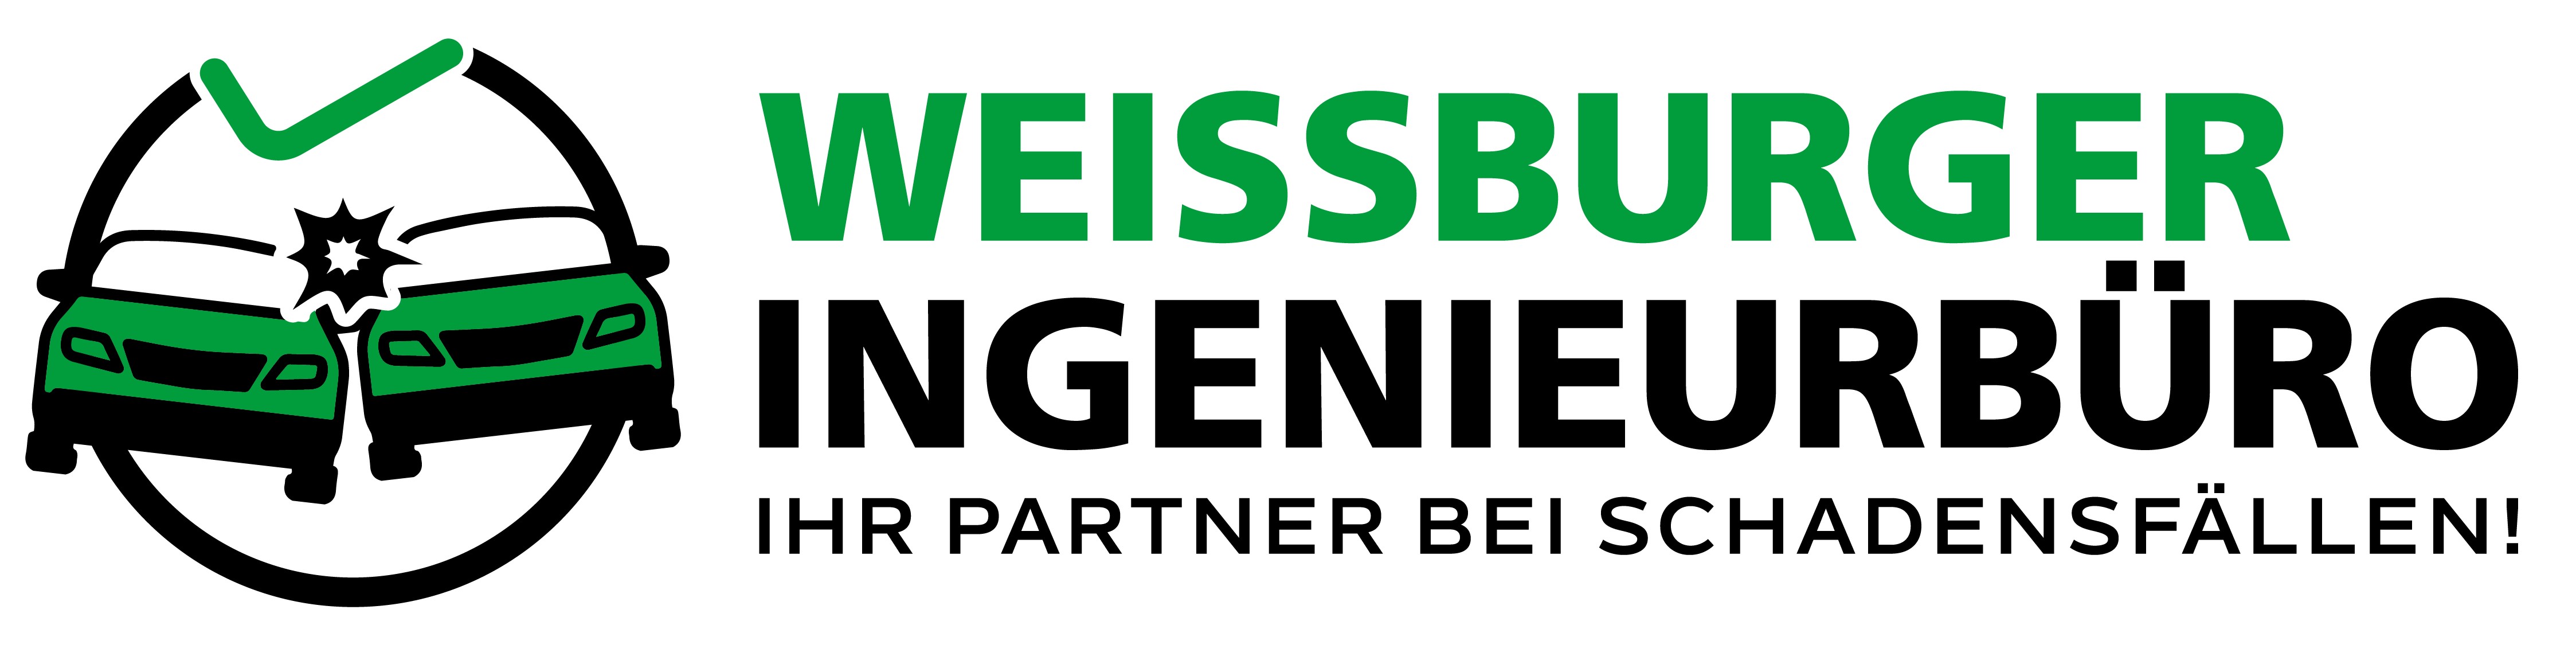 Logo von Weissburger Ingenieurbüro